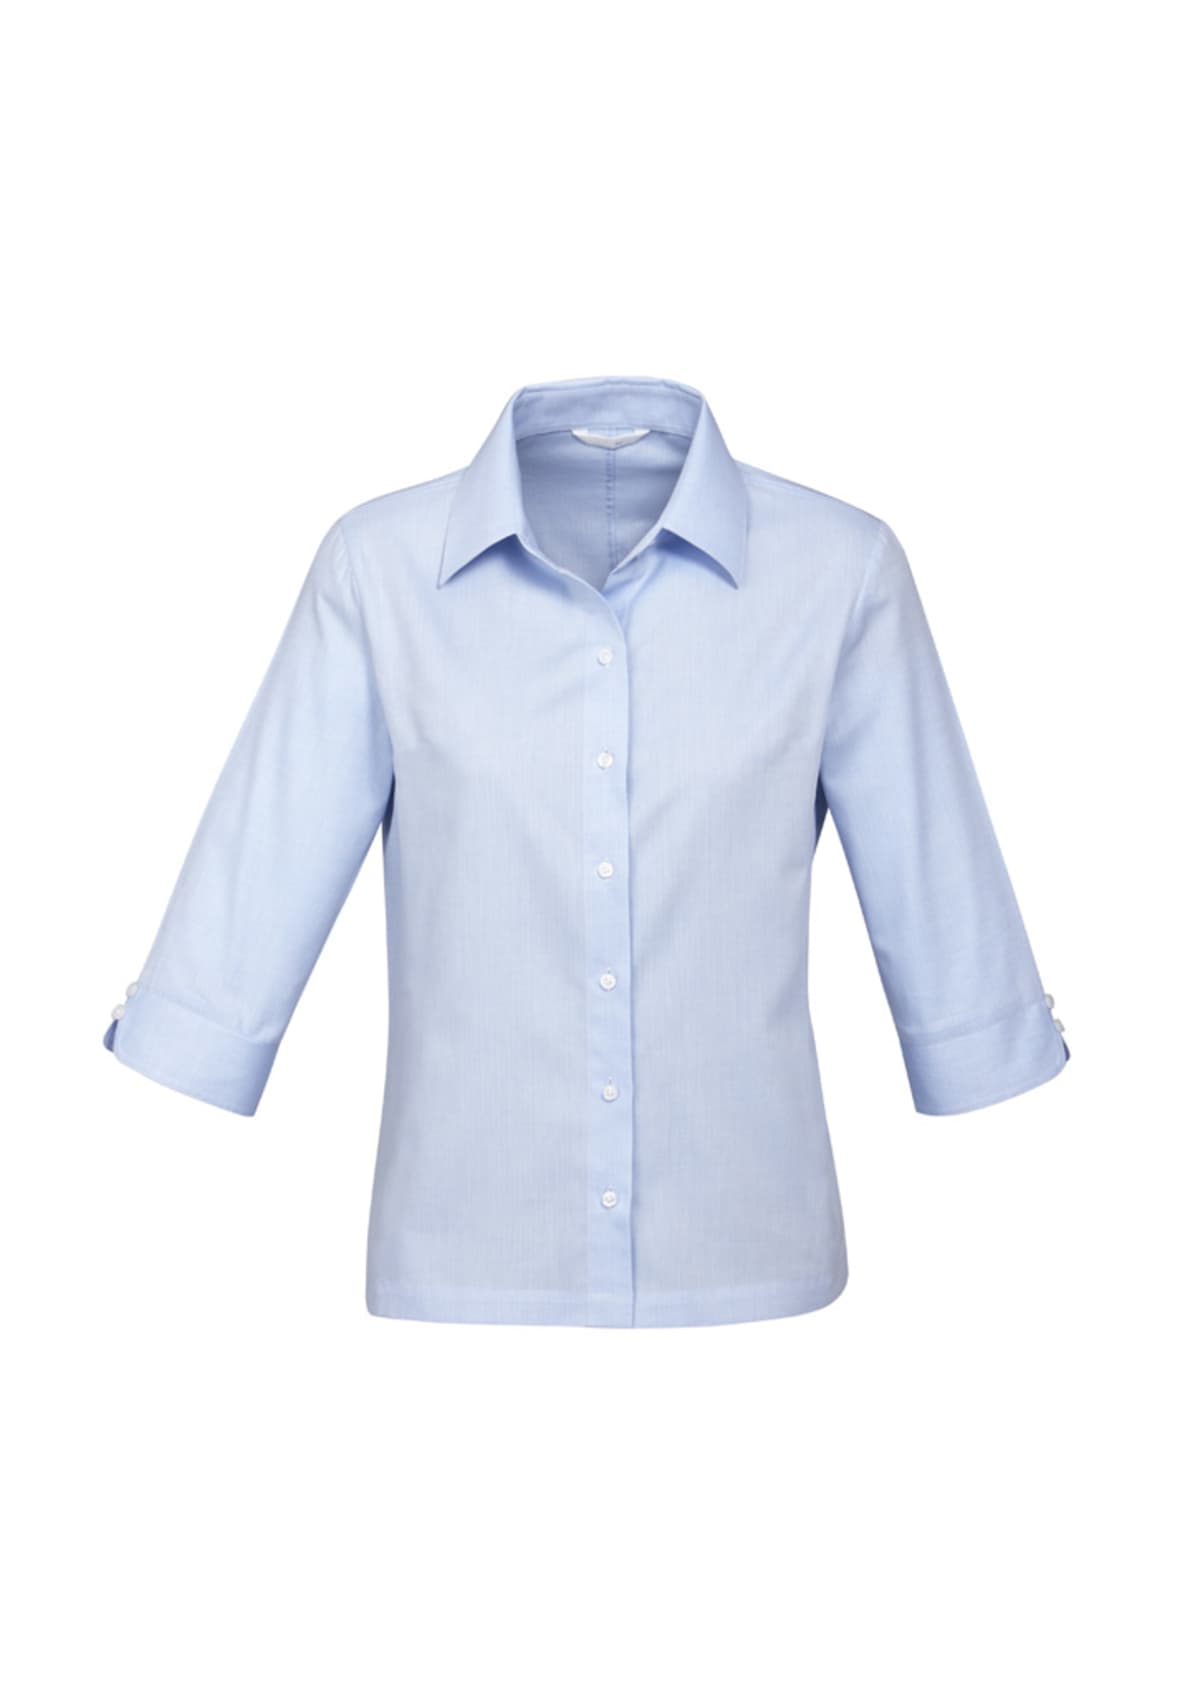 Womens Luxe 3/4 Sleeve Shirt